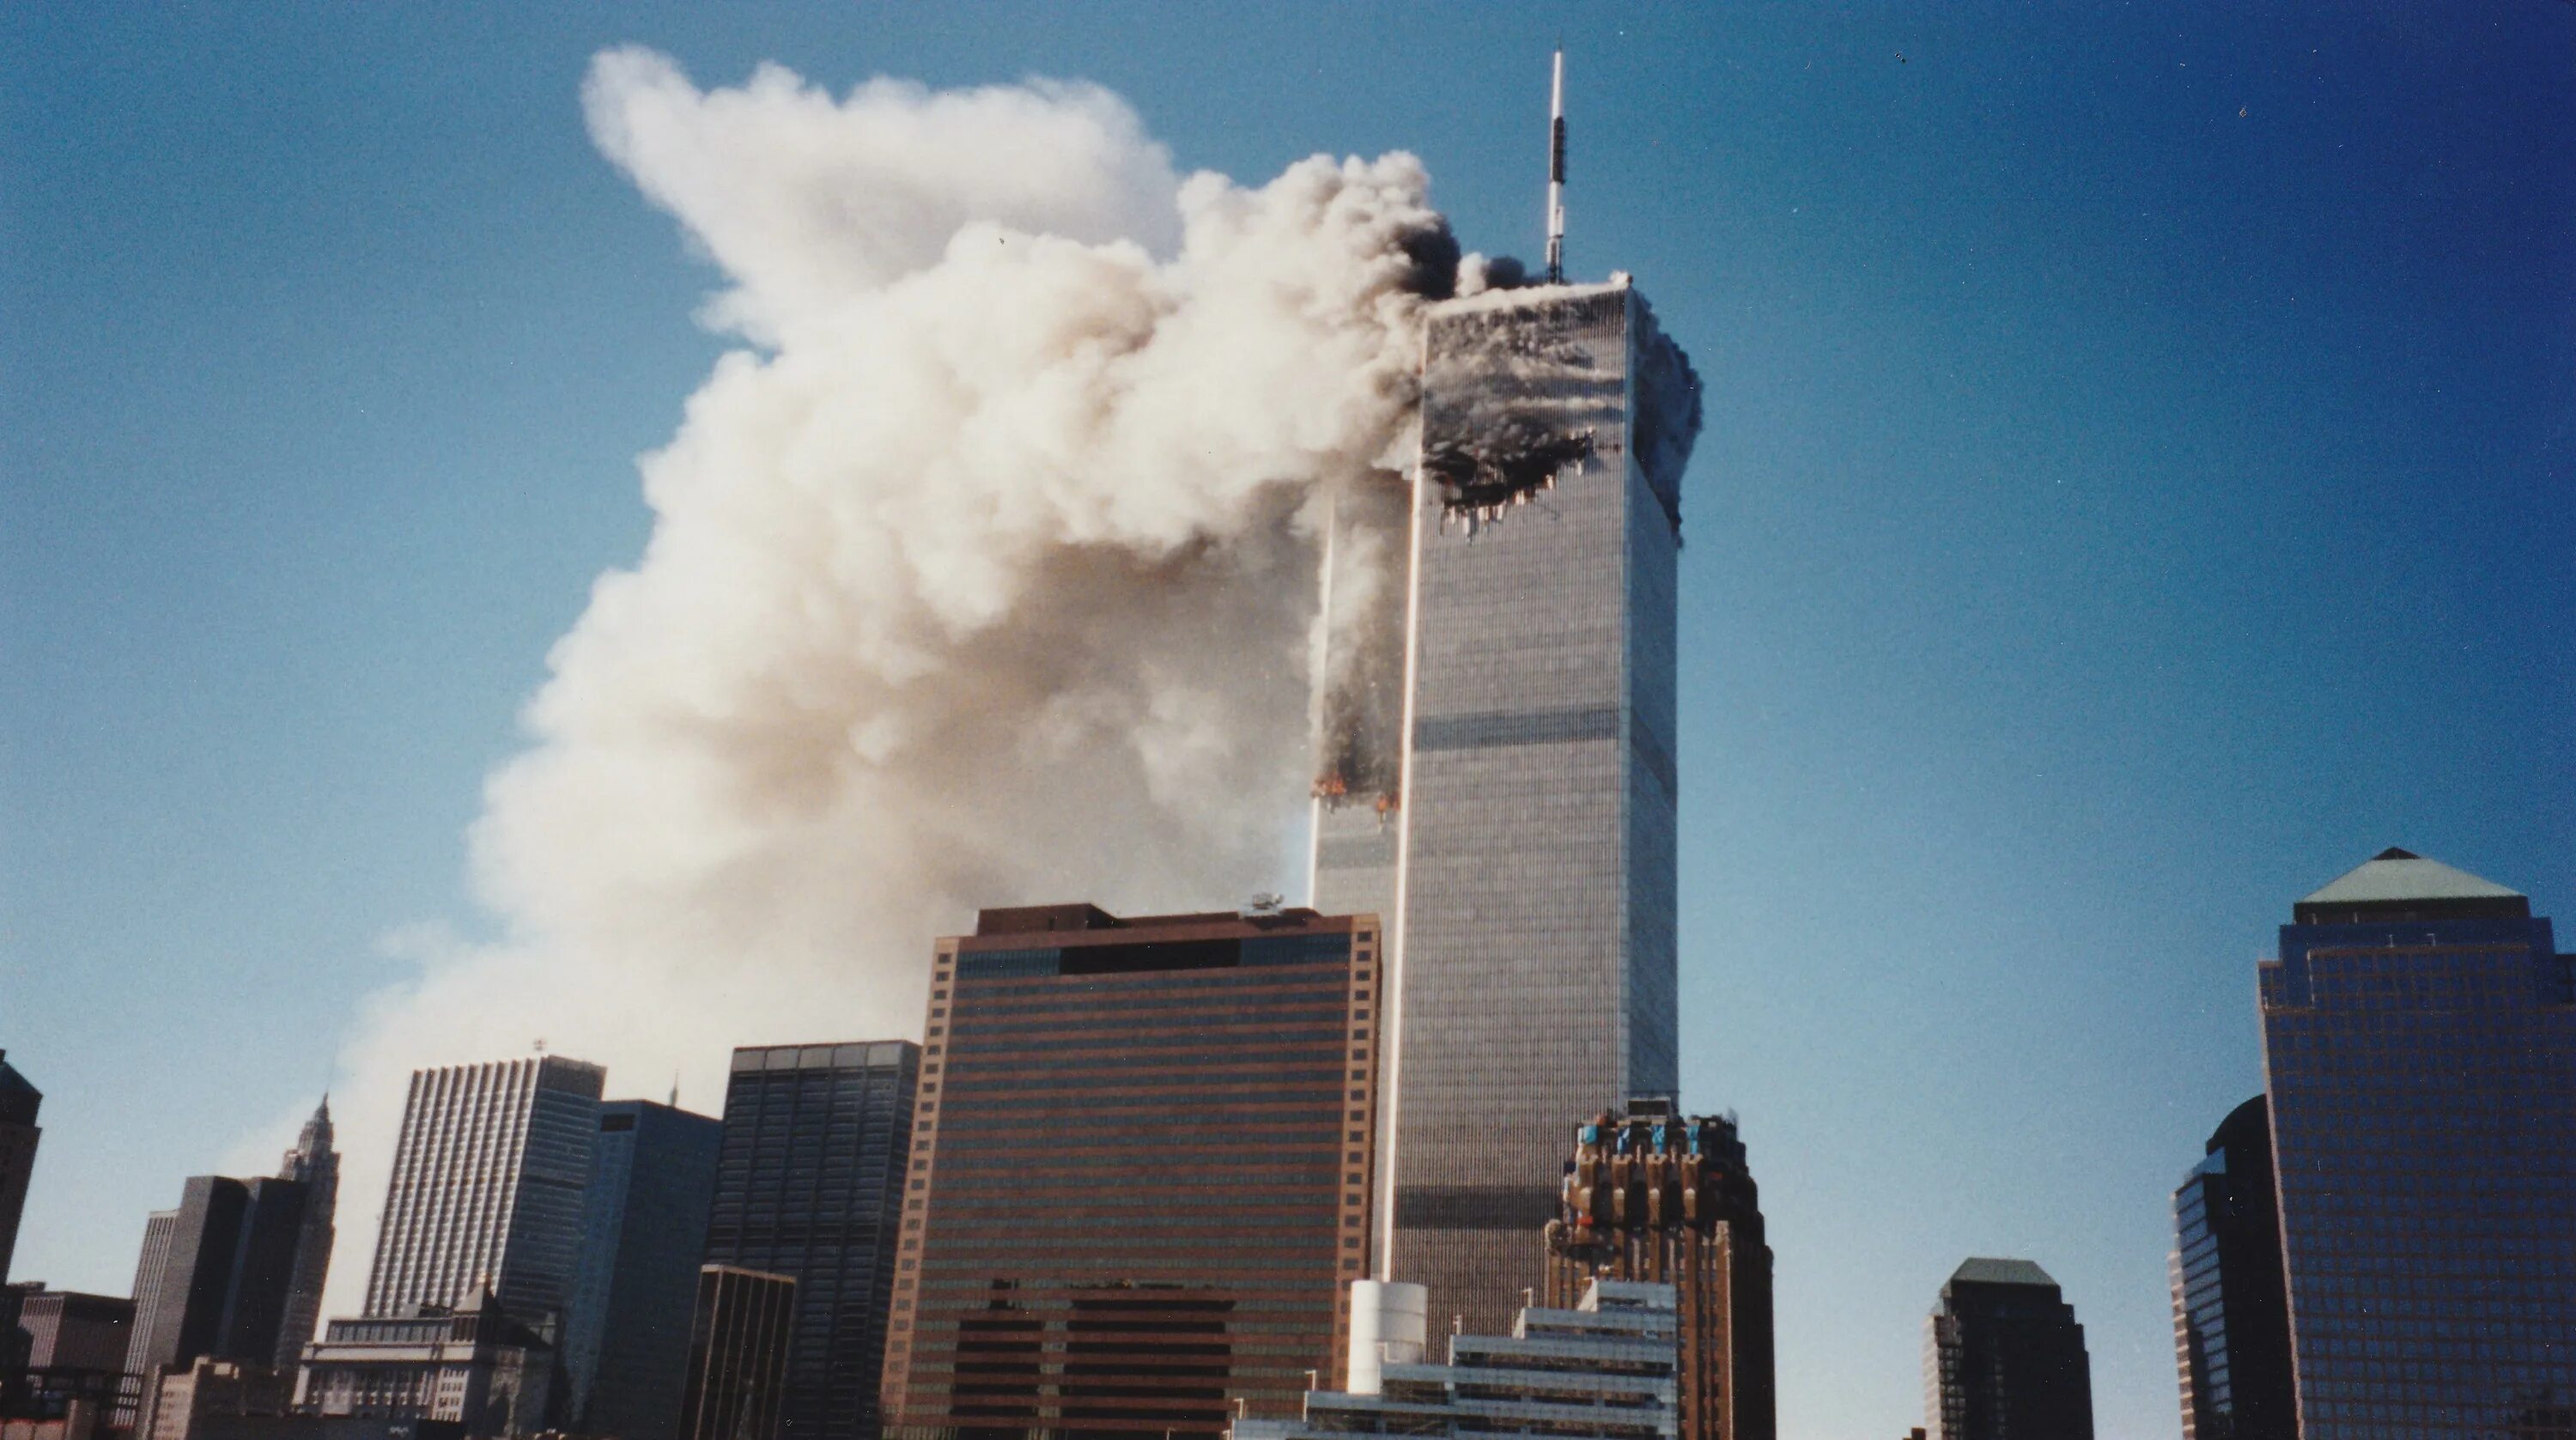 Башни-Близнецы 11 сентября 2001. Взрыв башен близнецов 11 сентября 2001. Всемирный торговый центр в Нью-Йорке 11 сентября 2001 года. Сша обвиняют в теракте